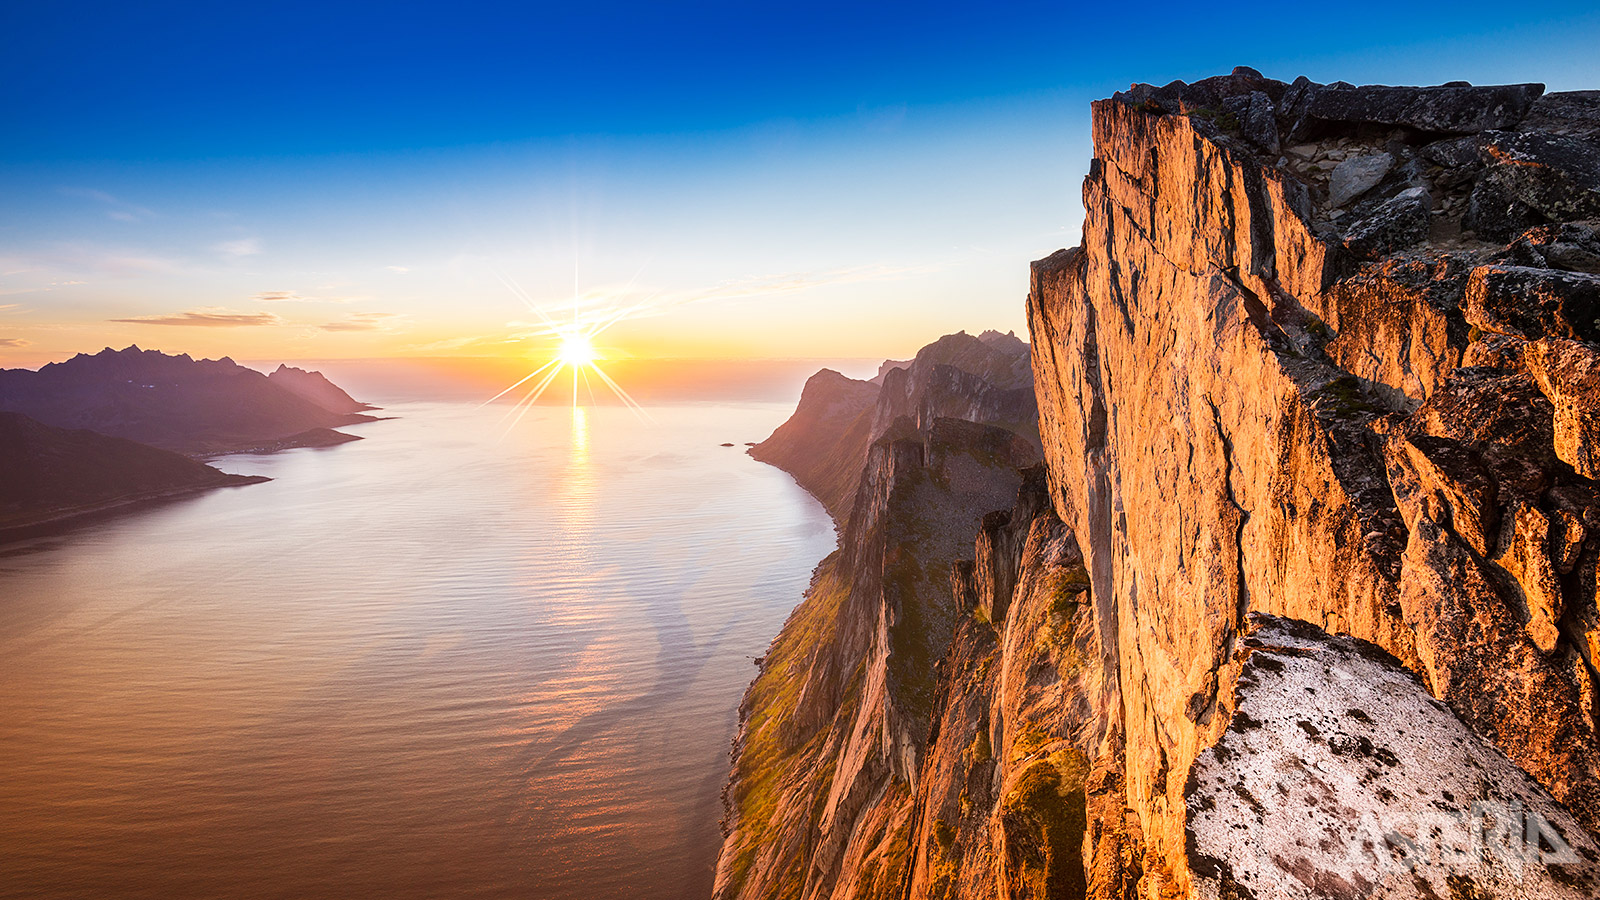 Senja staat gekend als ‘Noorwegen in het klein’ met alle hoogtepunten: fjorden, bergen, mooie baaien en witte zandstanden